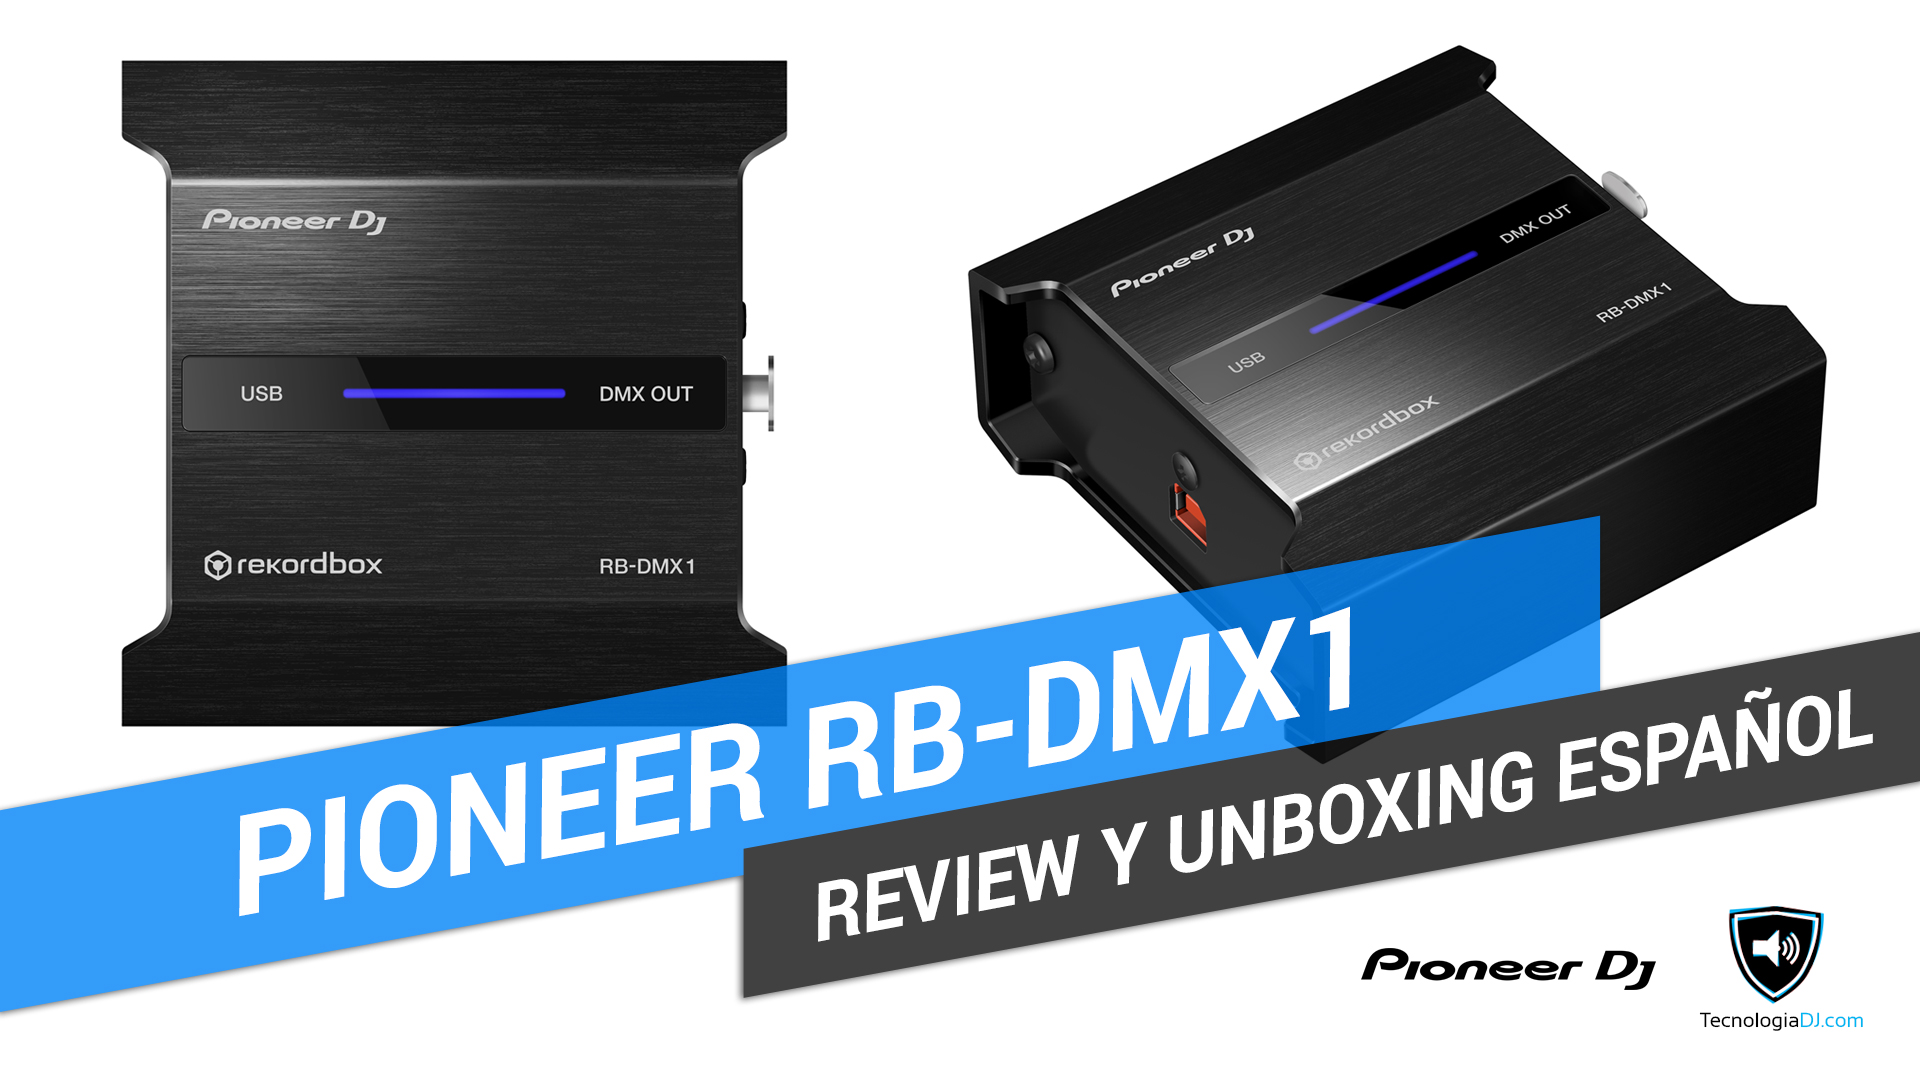 Review y unboxing en español interface Pioneer RB-DMX1